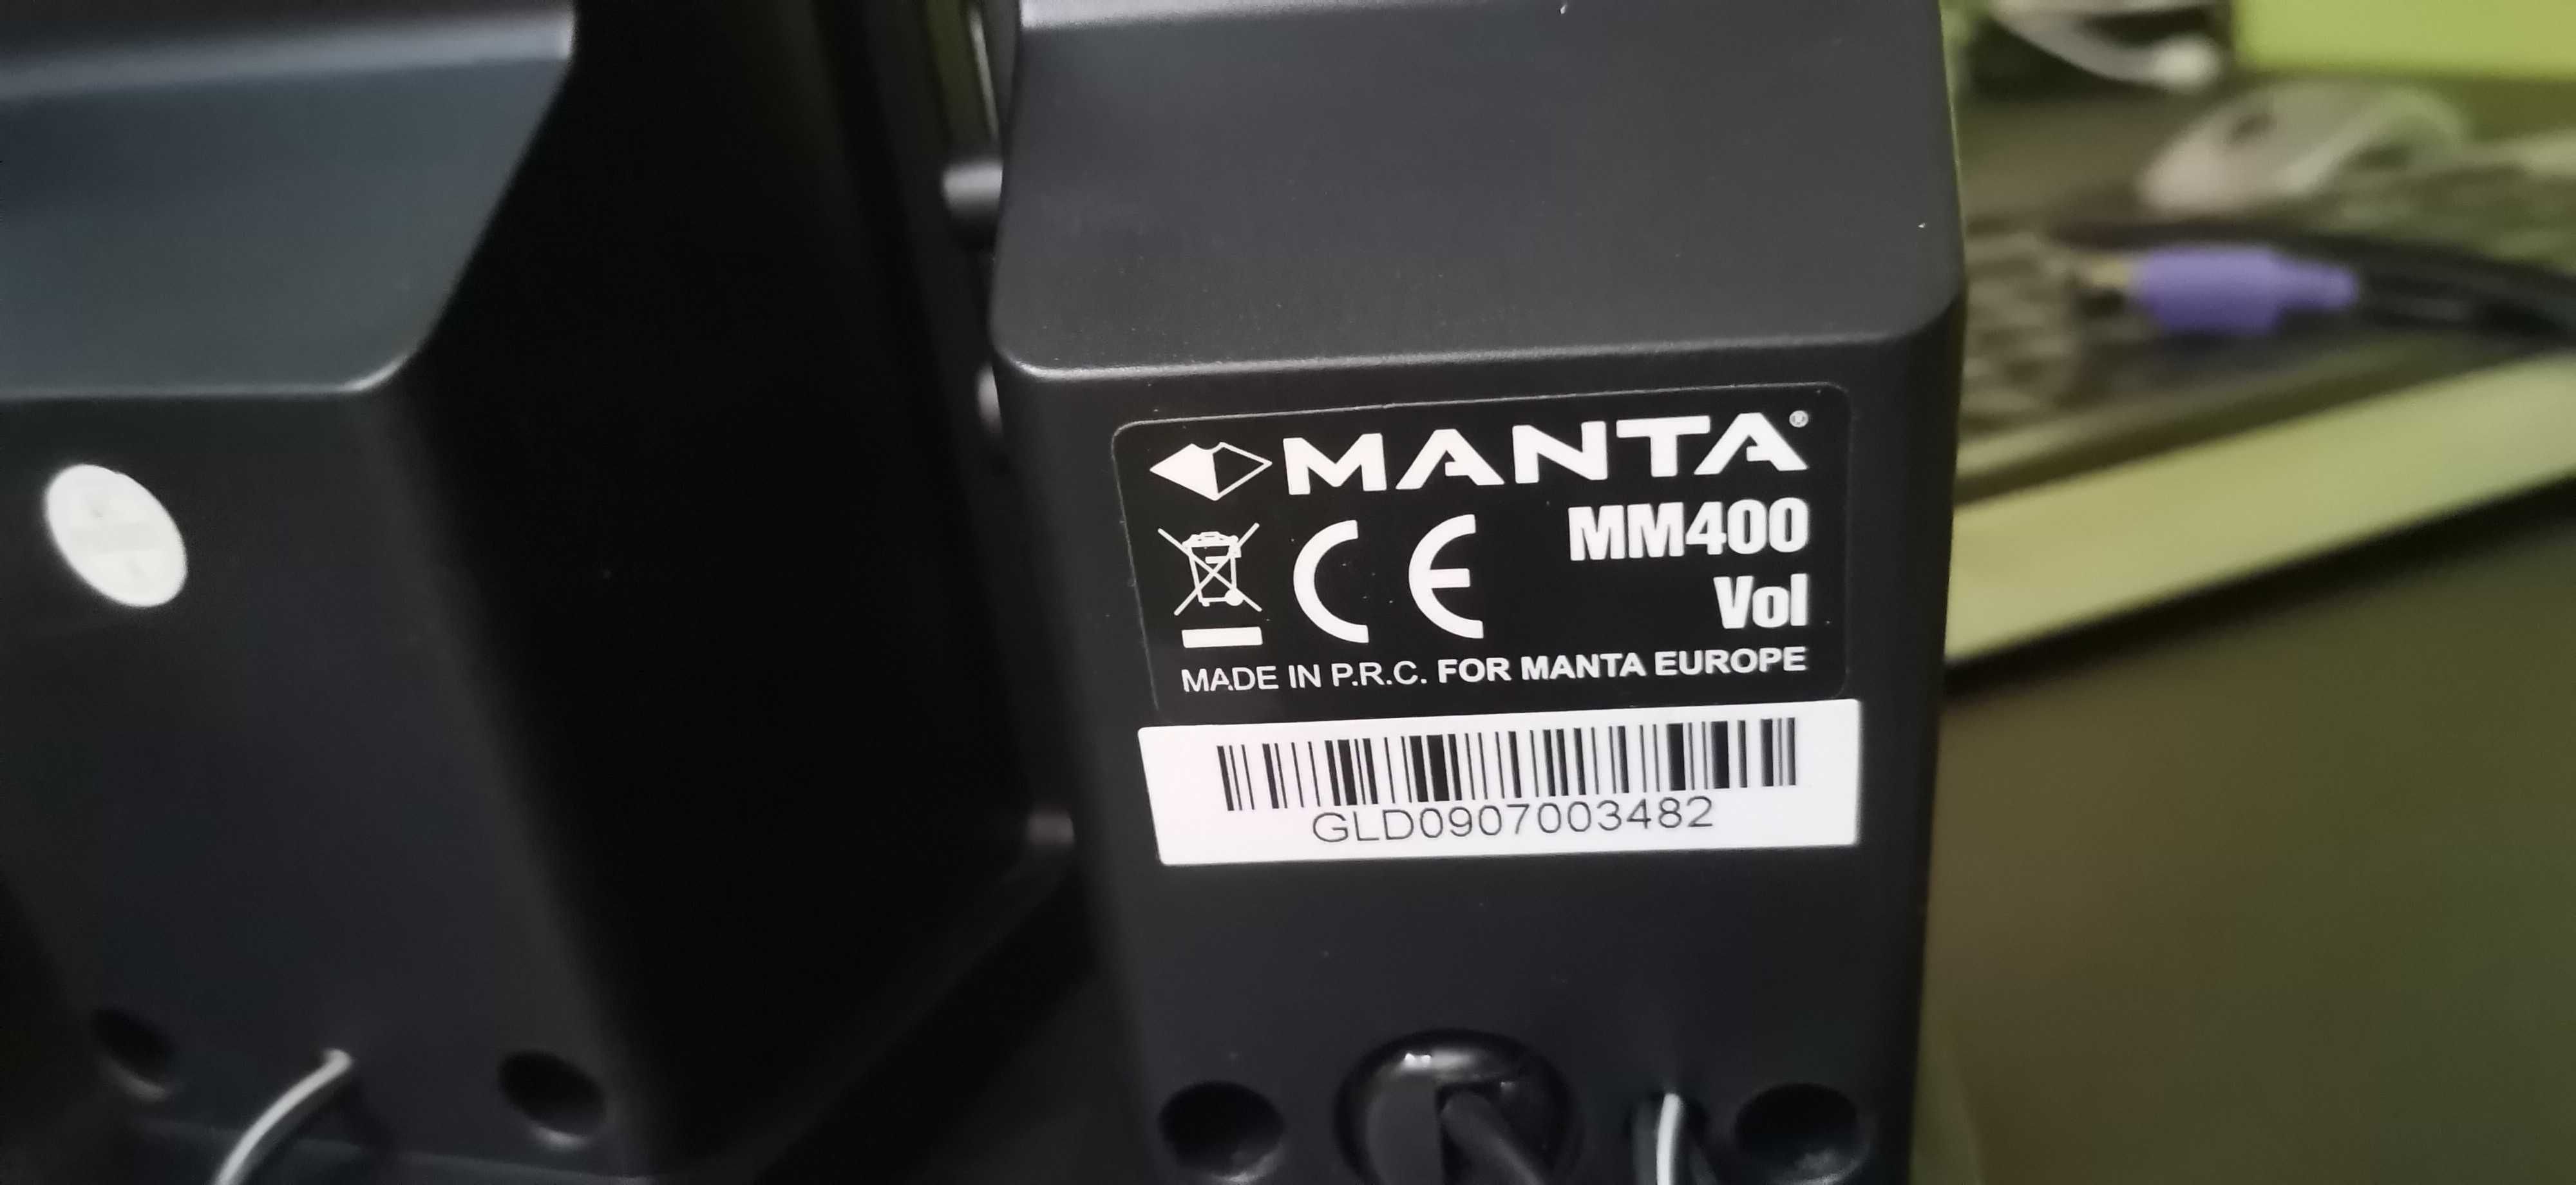 Głośniki Manta MM400